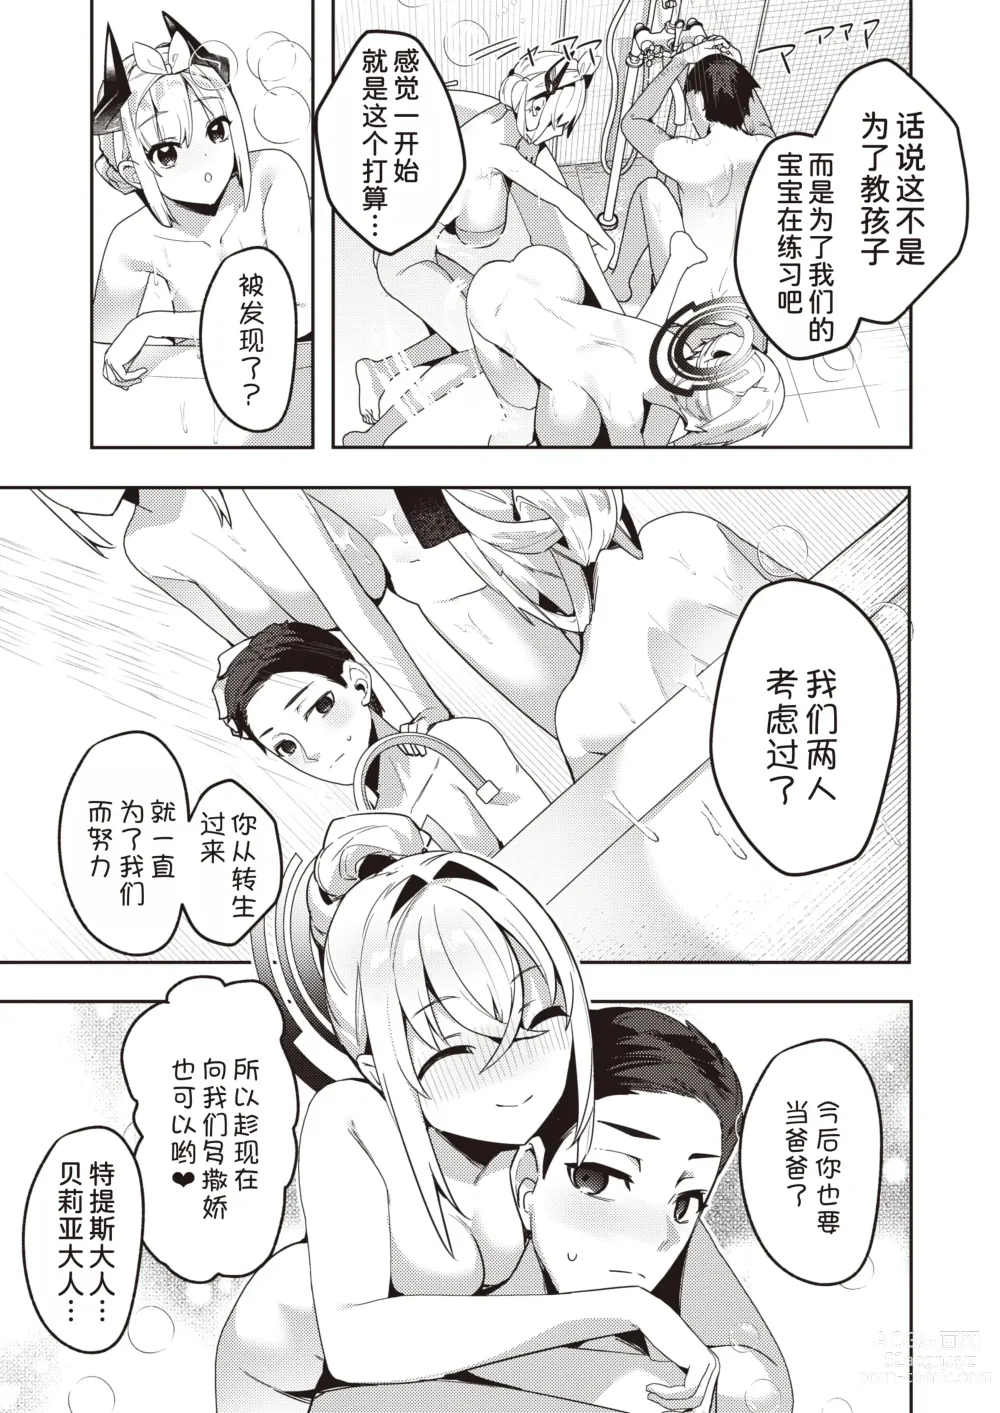 Page 22 of manga Chotto Yabai Megami to Maou to Amayakababubabu Suru no wa Dame desu ka?